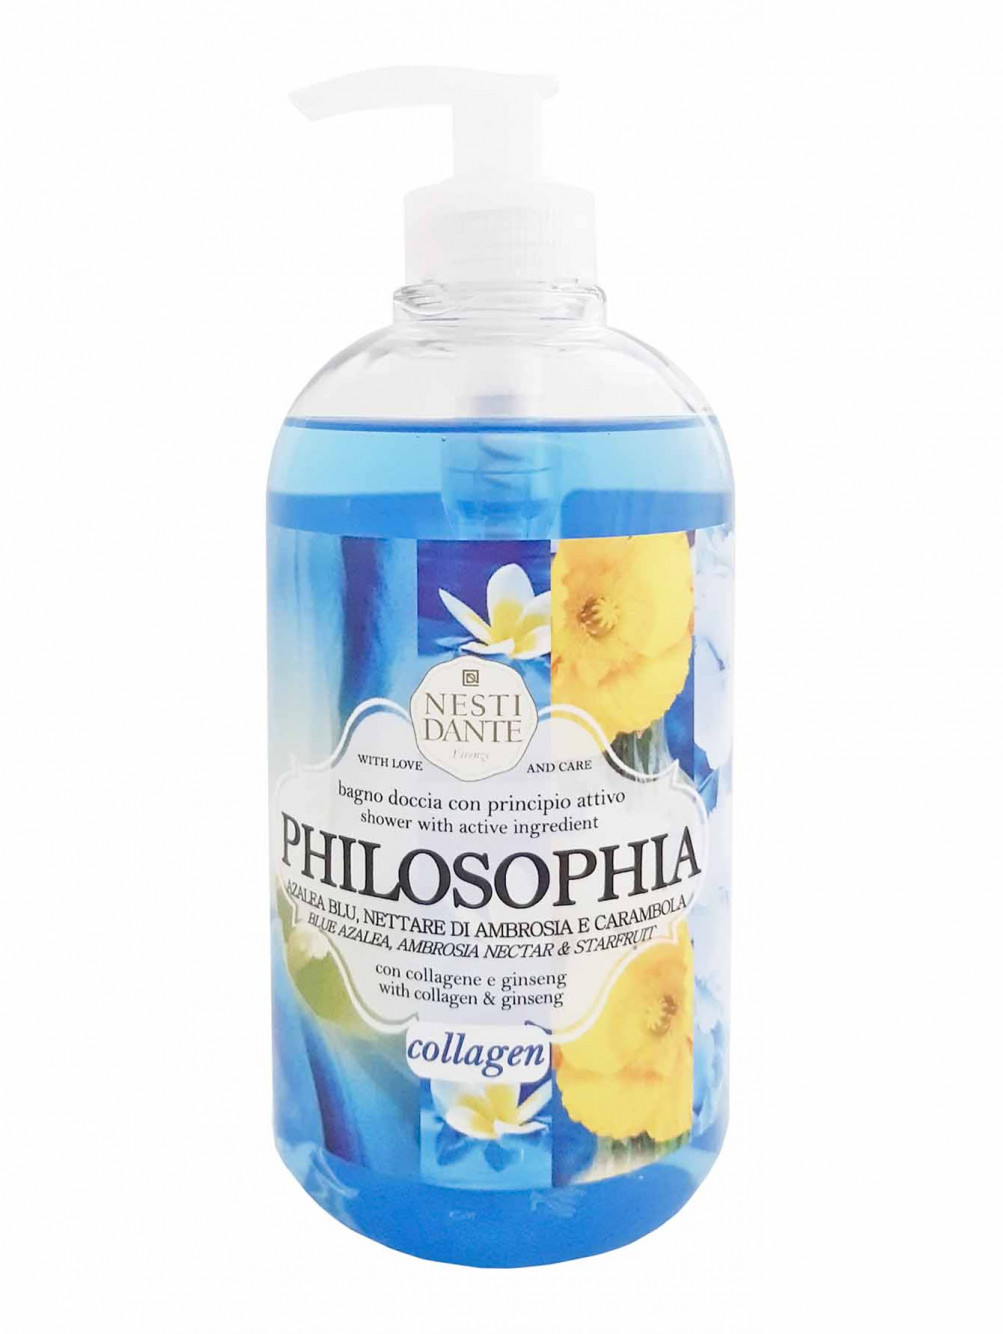 Жидкое мыло Philosophia Collagen, 500 мл - Общий вид